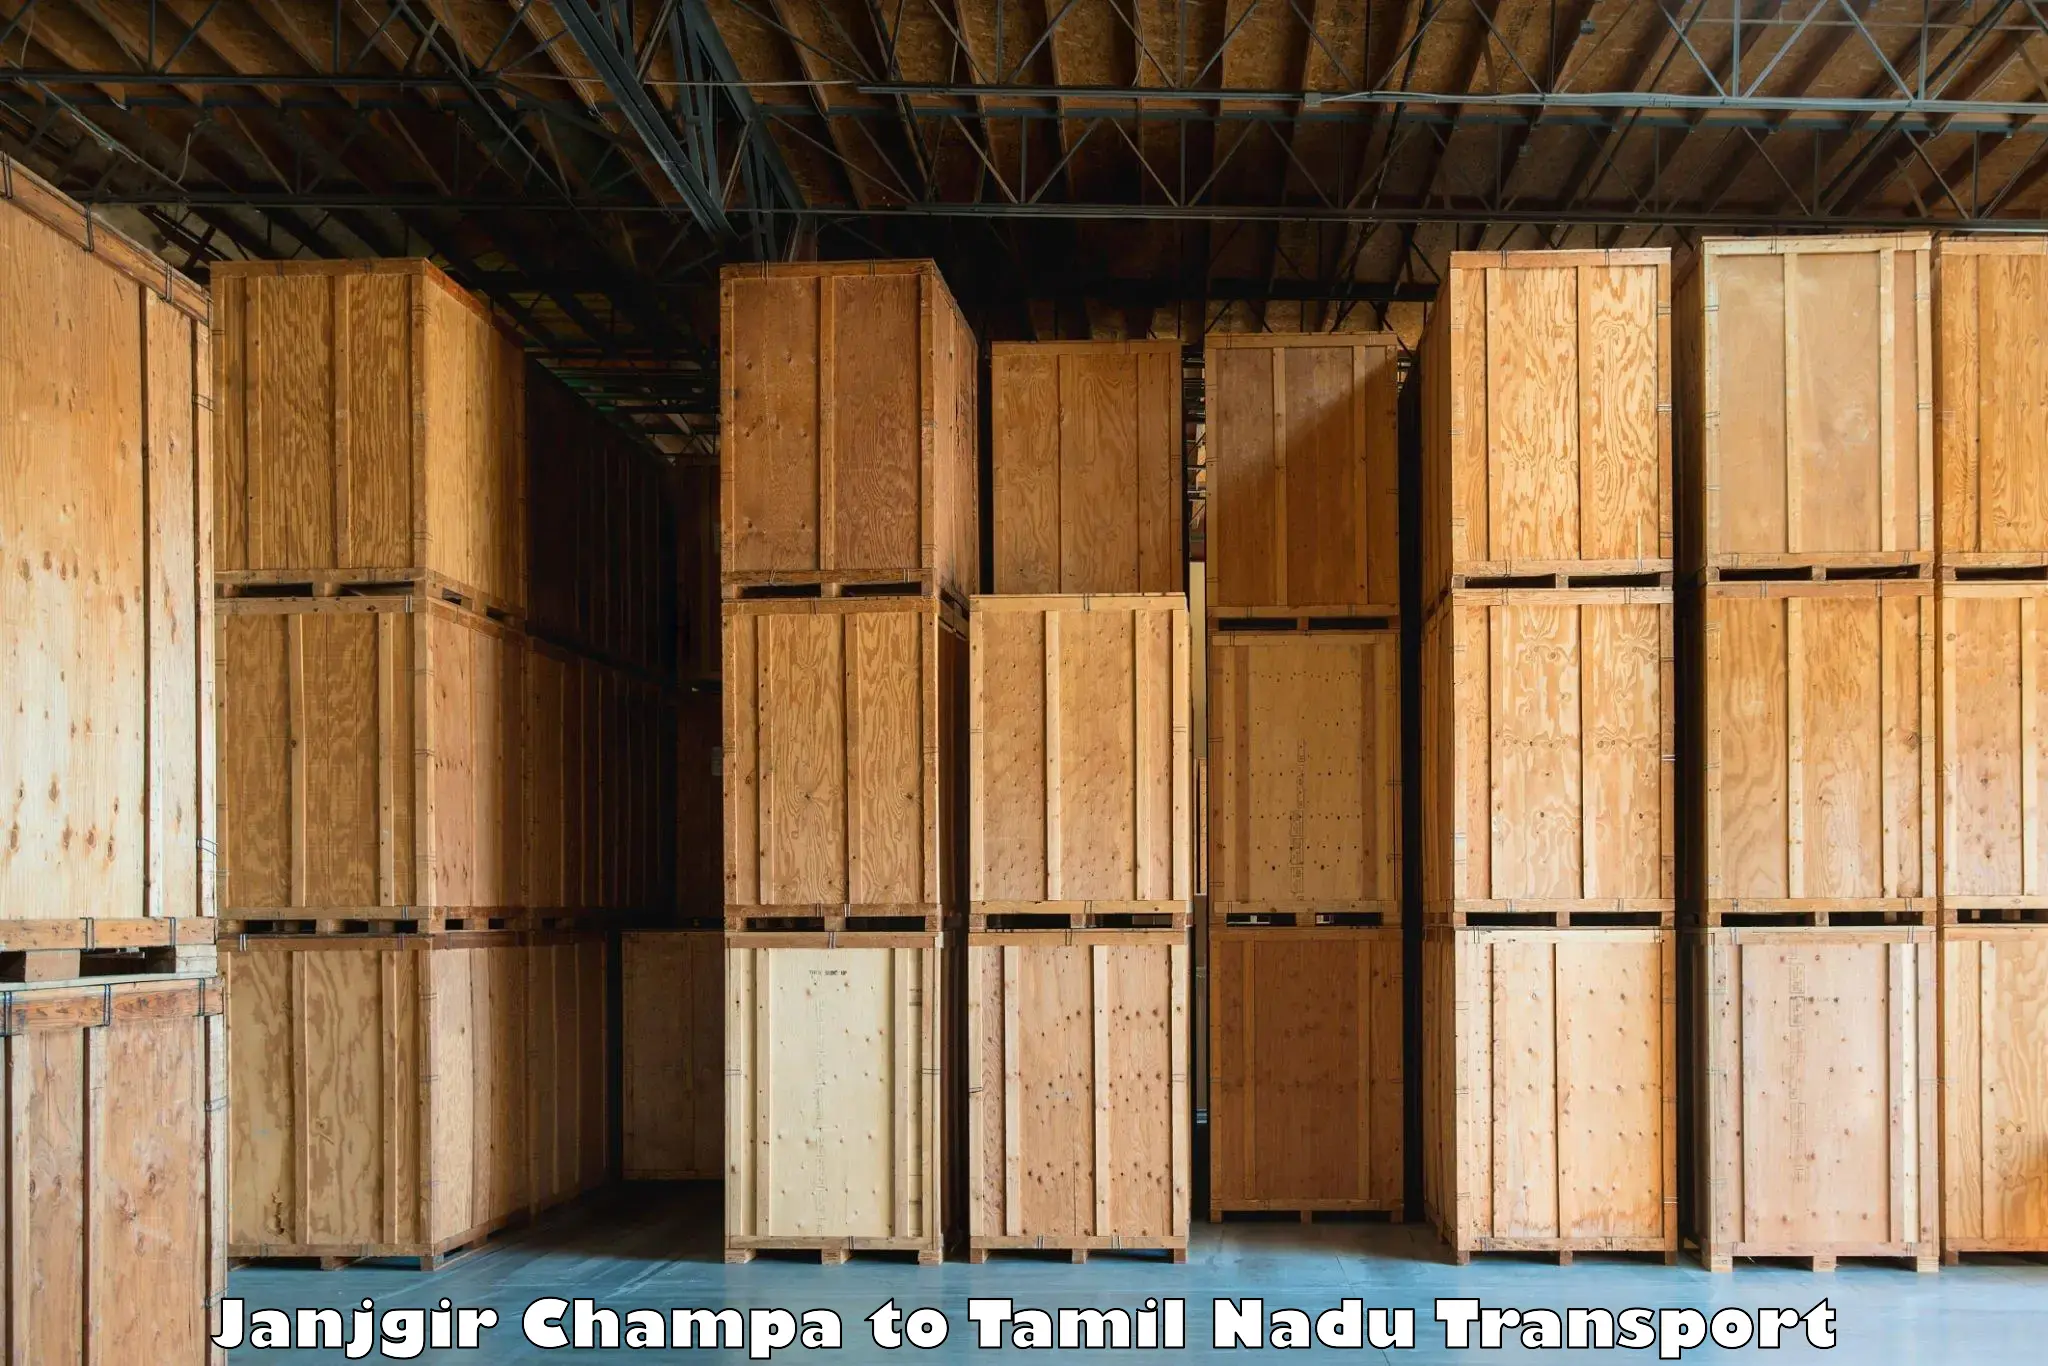 Lorry transport service Janjgir Champa to Nilakottai